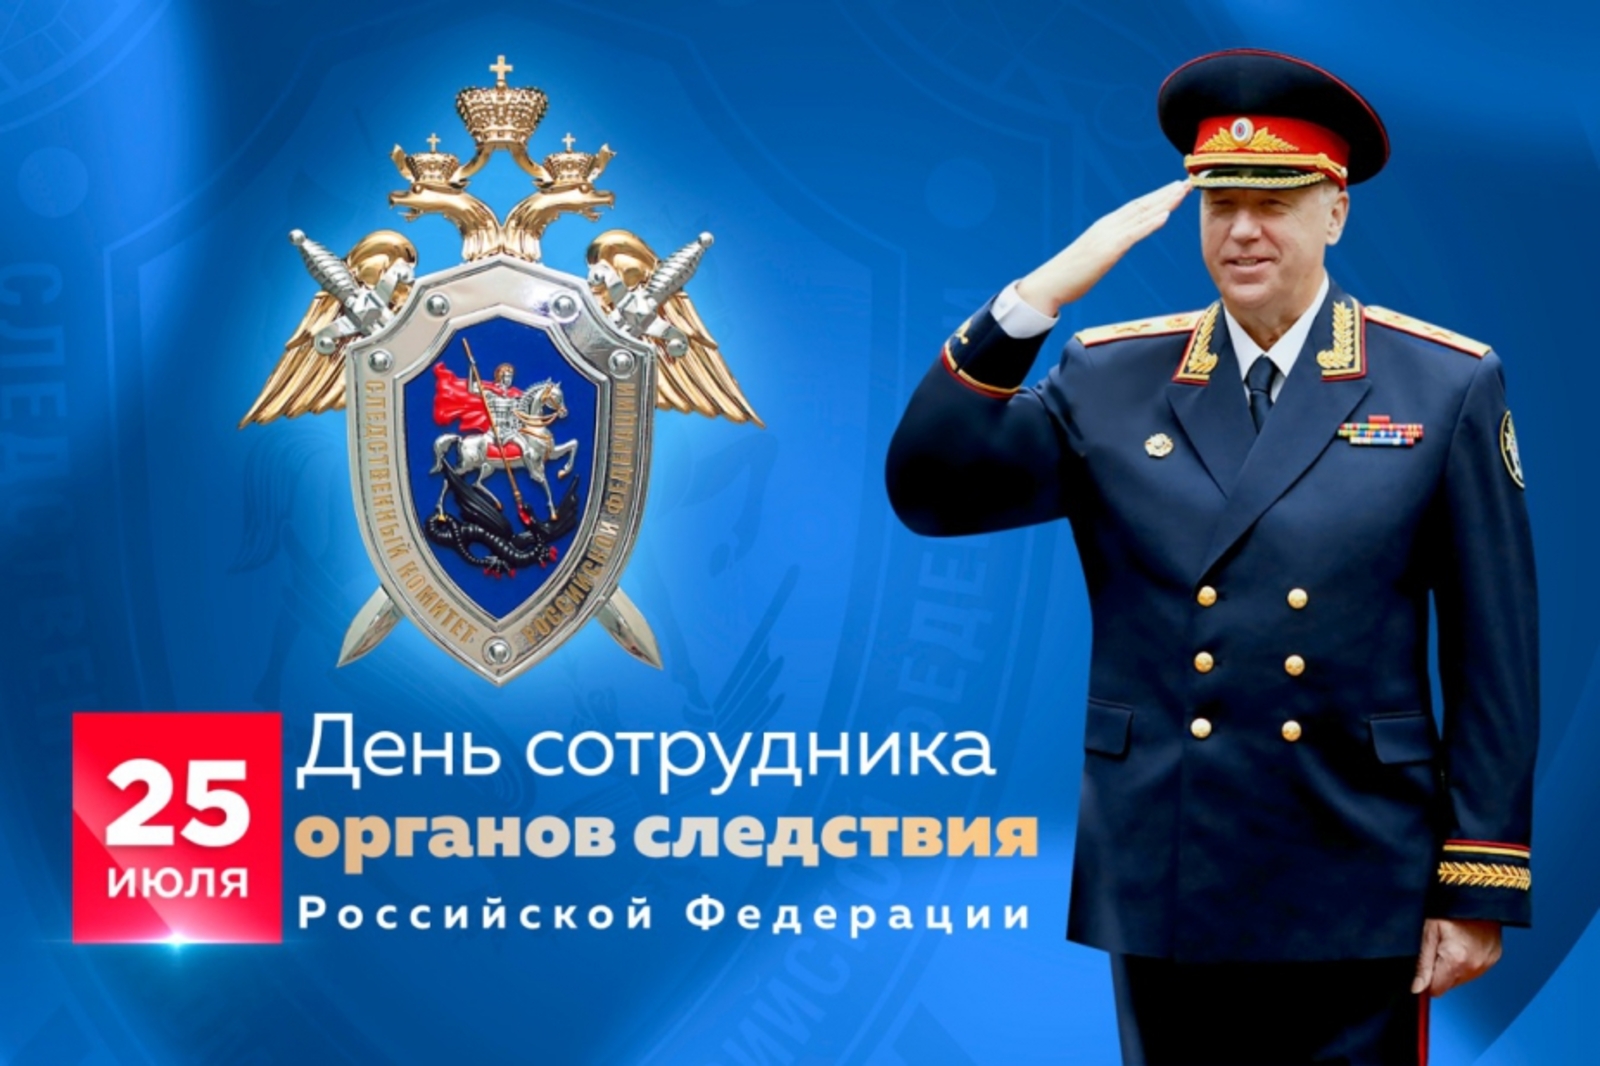 Путин поздравил сотрудников органов следствия России с профессиональным праздником